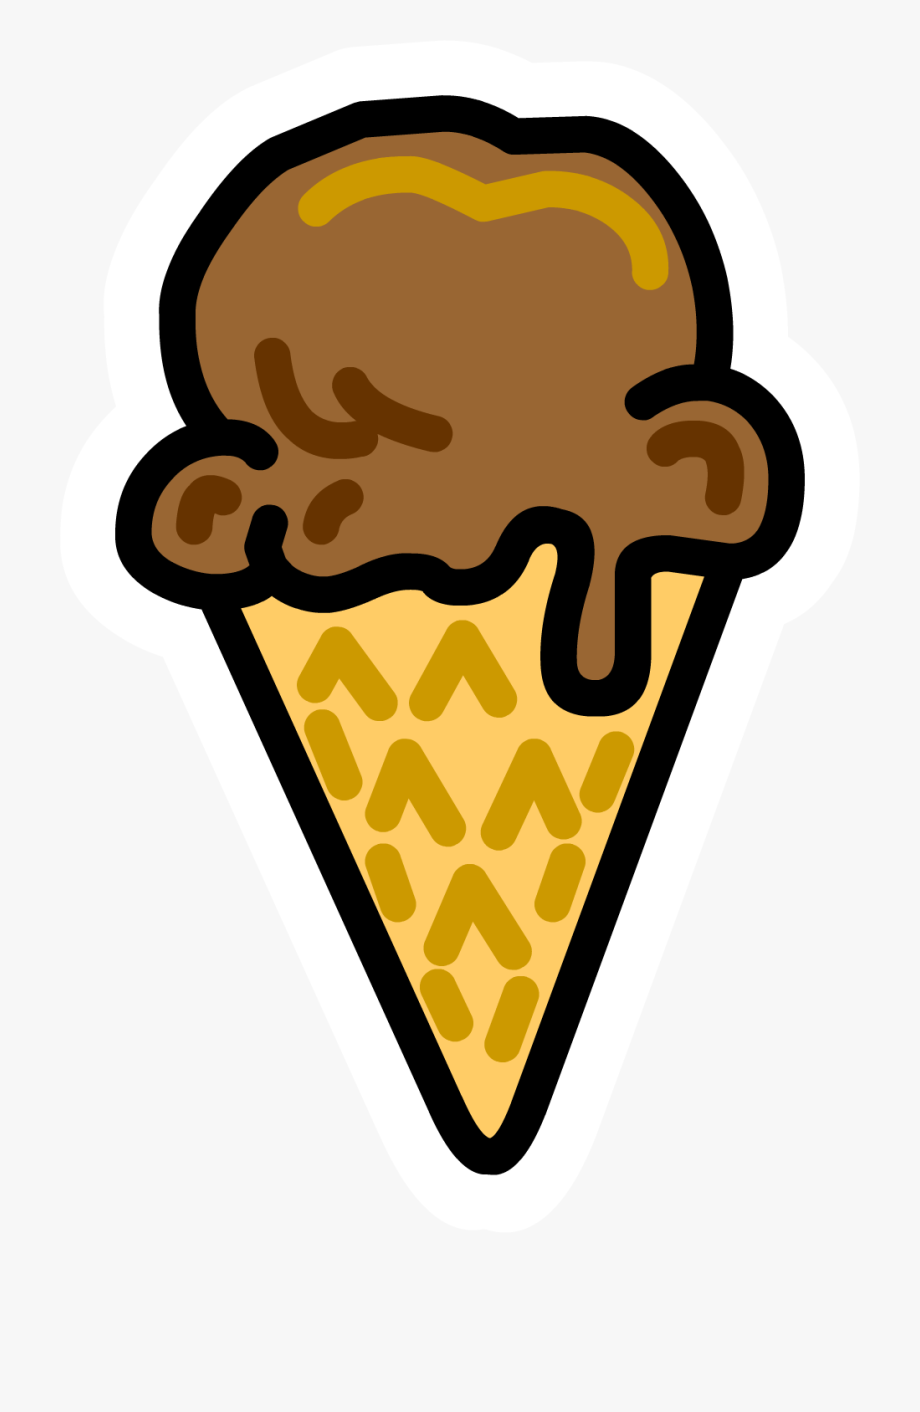 Icecream cone pin.